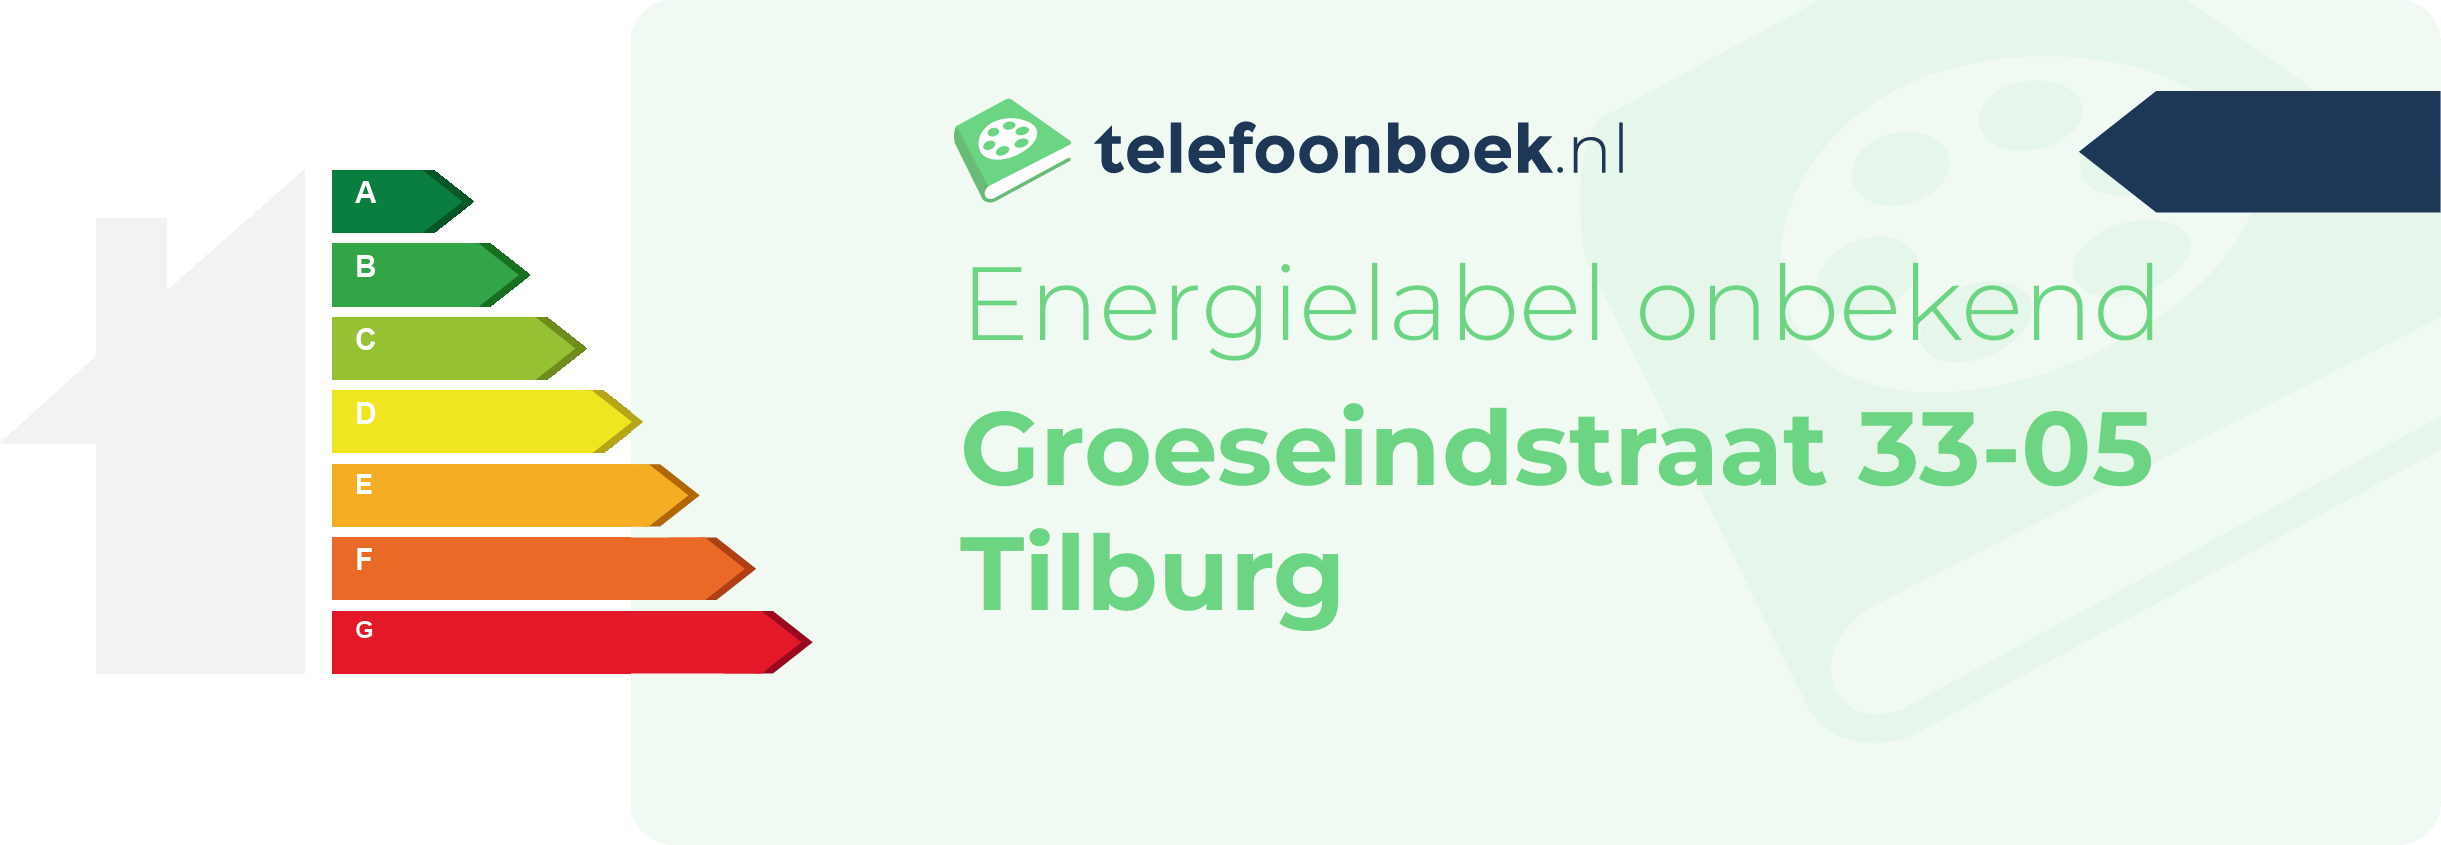 Energielabel Groeseindstraat 33-05 Tilburg